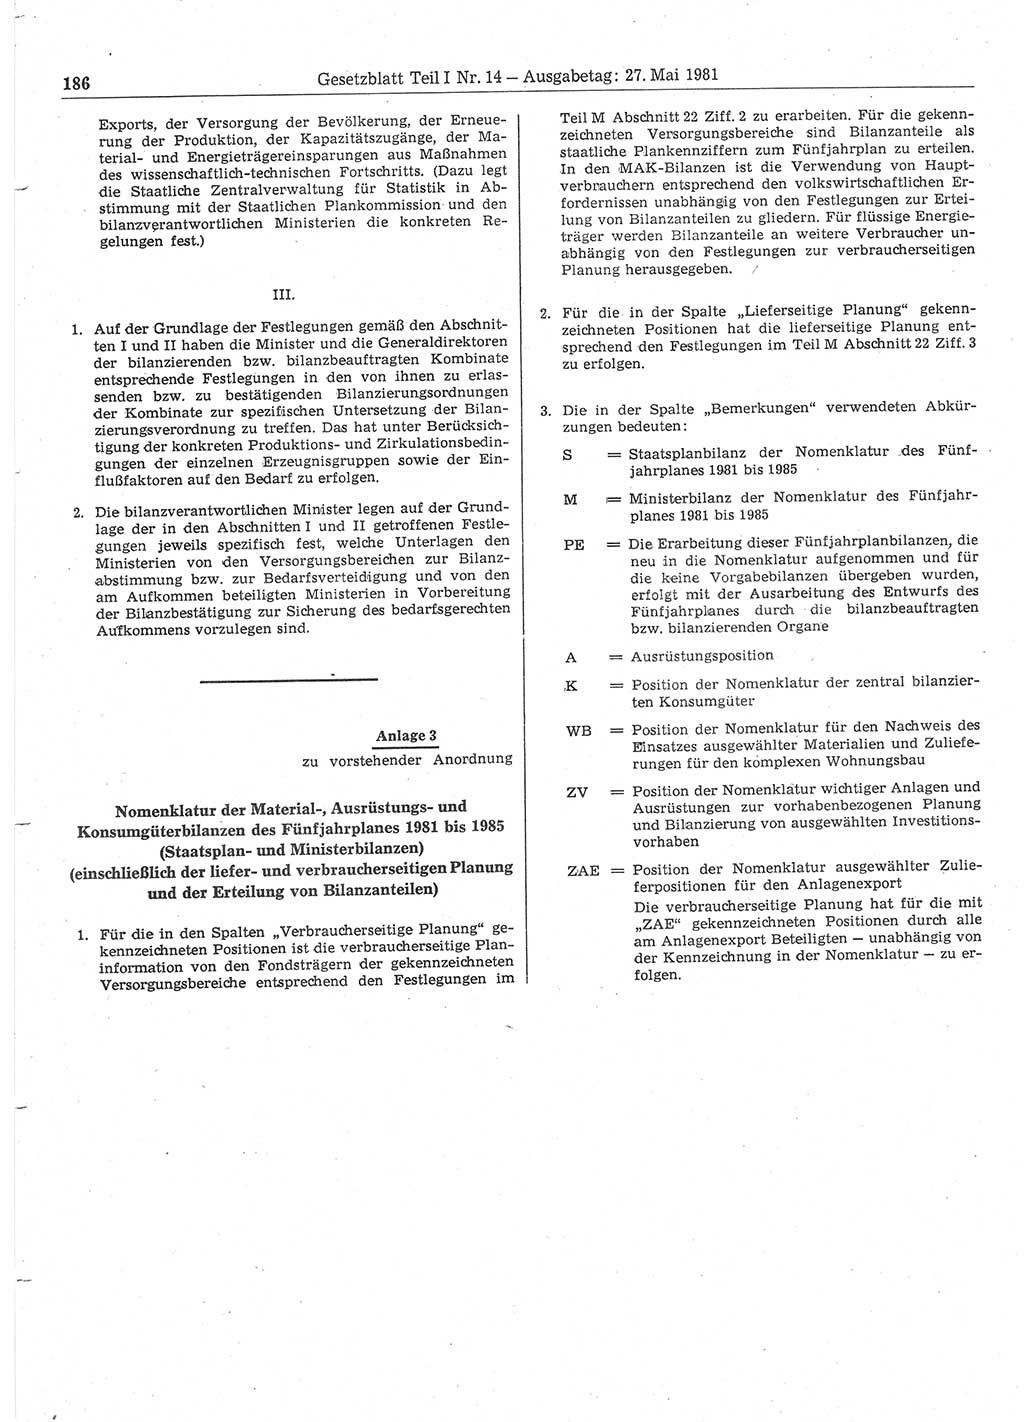 Gesetzblatt (GBl.) der Deutschen Demokratischen Republik (DDR) Teil Ⅰ 1981, Seite 186 (GBl. DDR Ⅰ 1981, S. 186)